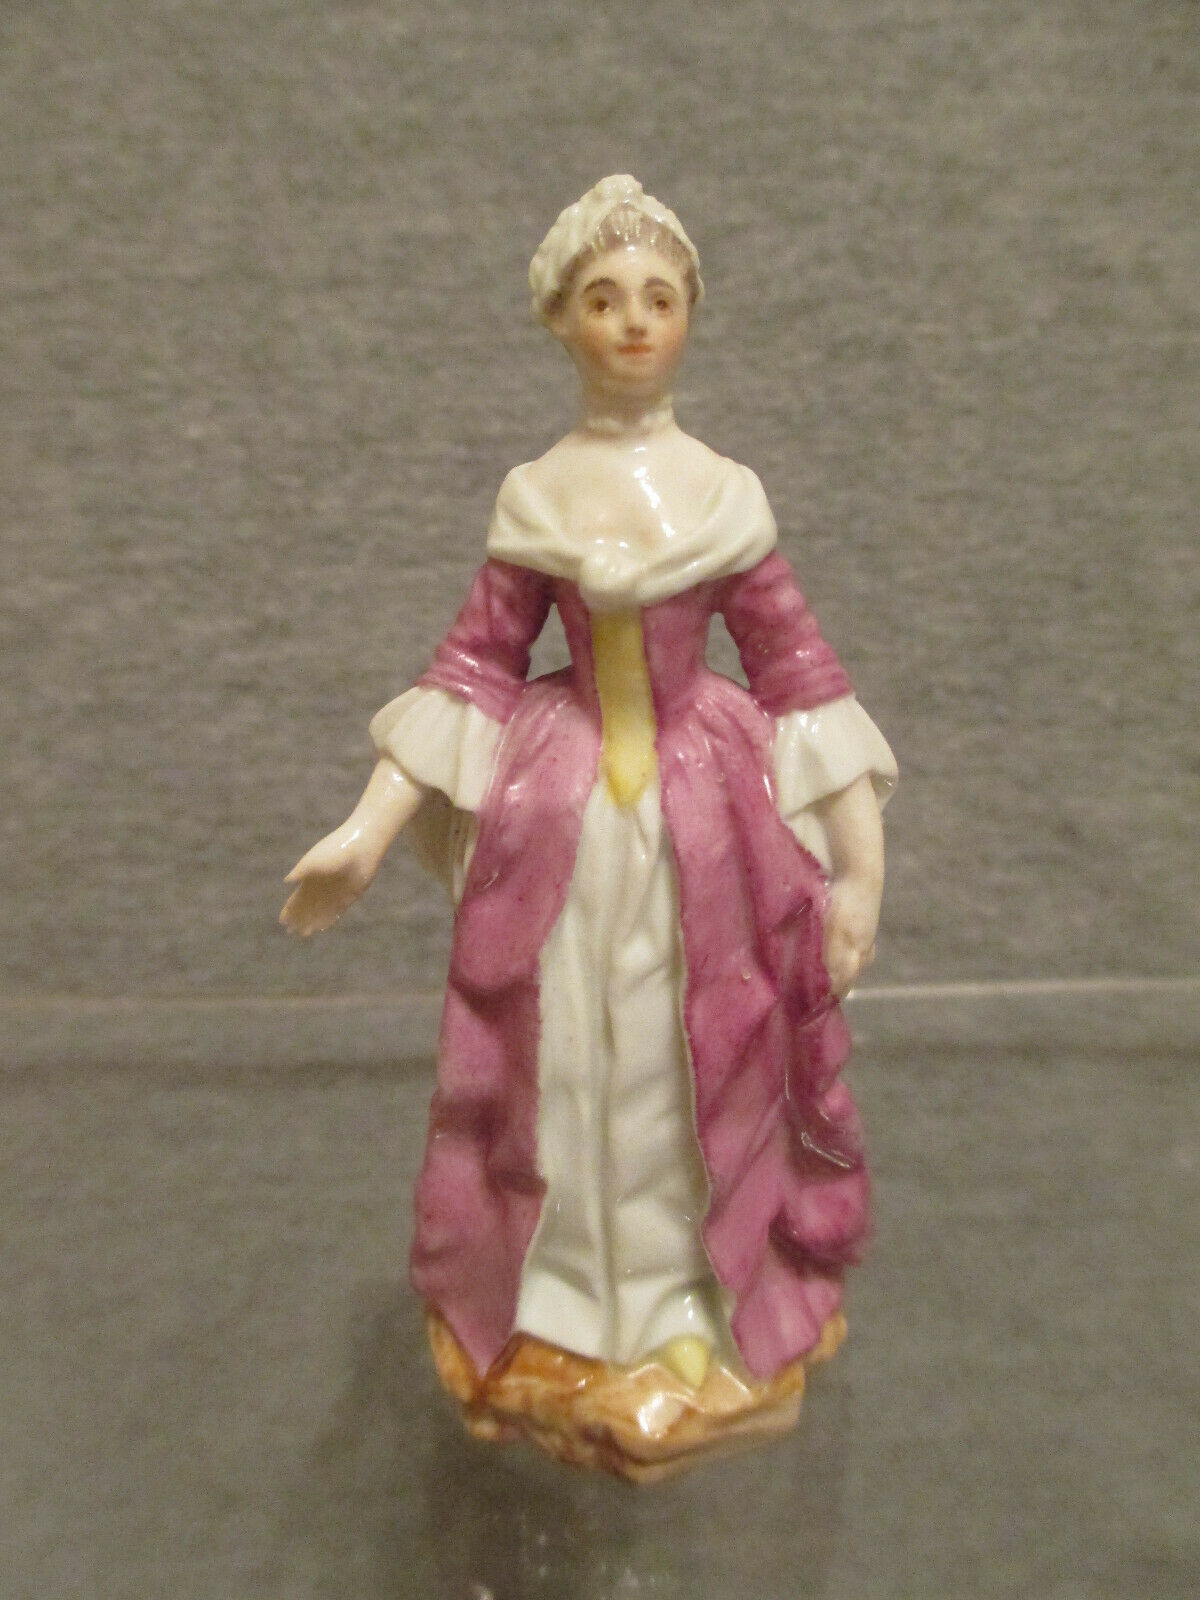 Höchster Porzellan-Frauenfigur um 1765